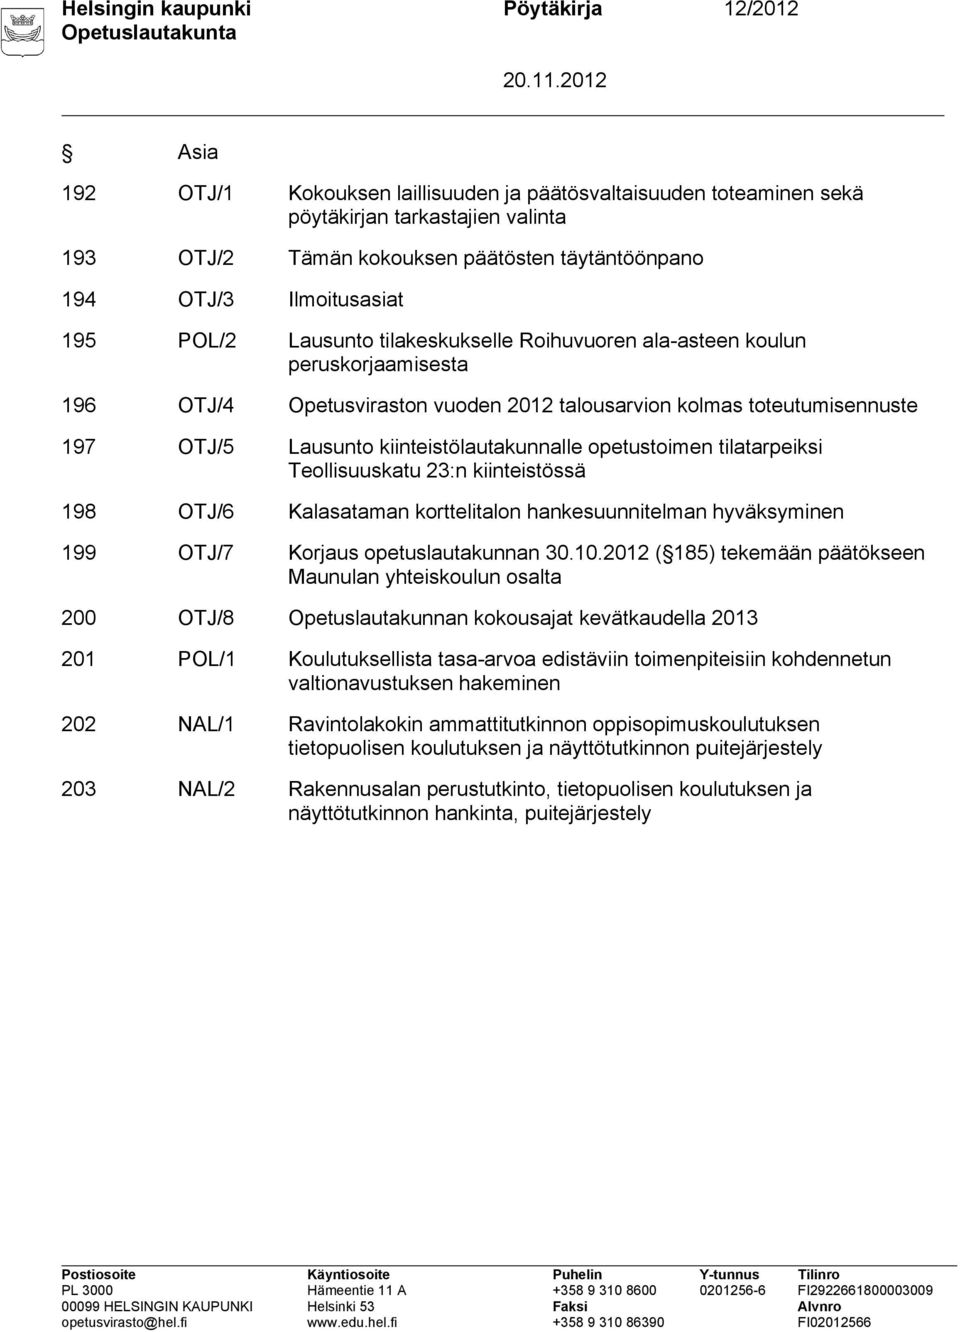 Lausunto kiinteistölautakunnalle opetustoimen tilatarpeiksi Teollisuuskatu 23:n kiinteistössä 198 OTJ/6 Kalasataman korttelitalon hankesuunnitelman hyväksyminen 199 OTJ/7 Korjaus opetuslautakunnan 30.